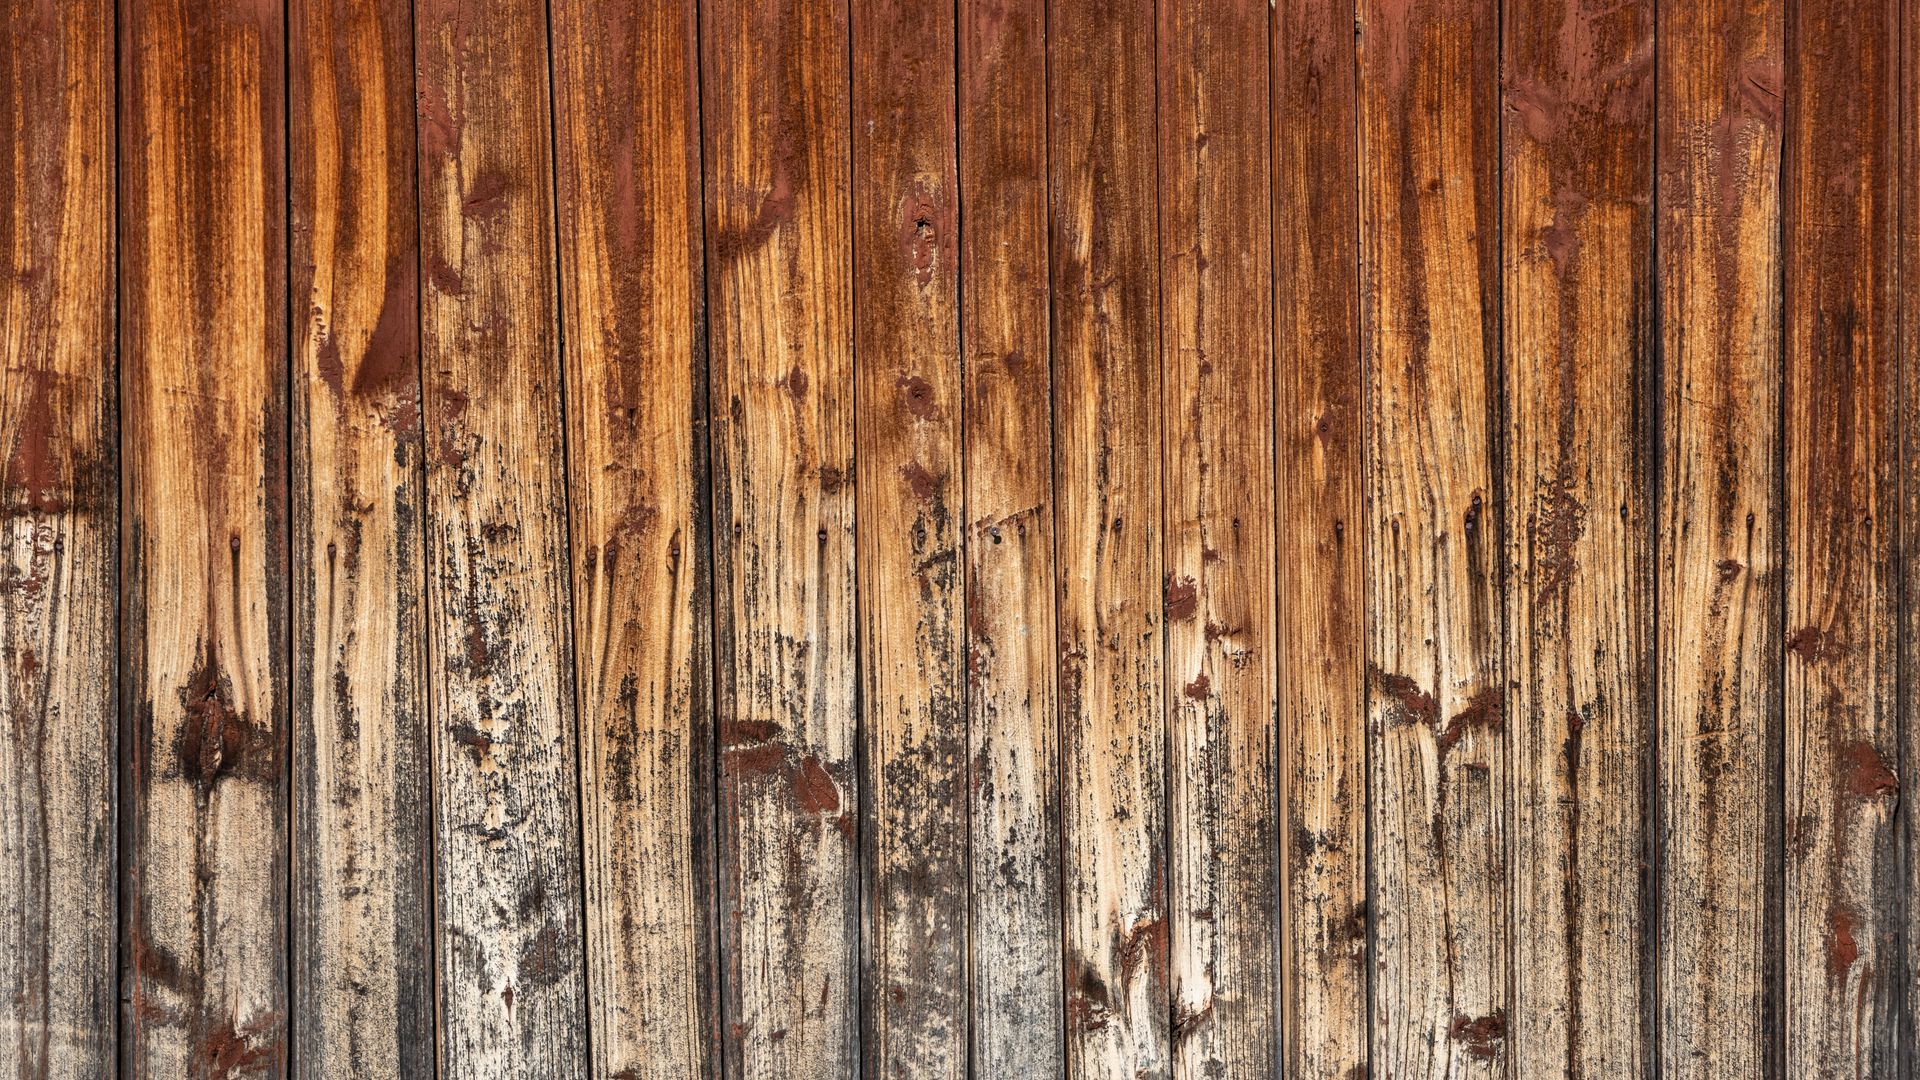 Tải hình nền gỗ nâu đầy đủ HD để tận hưởng vẻ đẹp sắc nét của đường vân gỗ tự nhiên trên màn hình của bạn. Với chất lượng HD đẳng cấp và đầy đủ các tông màu gỗ nâu khác nhau, hình ảnh này sẽ mang đến cho bạn một trải nghiệm đầy tinh tế và ấn tượng. Hãy tải xuống ngay để trải nghiệm.